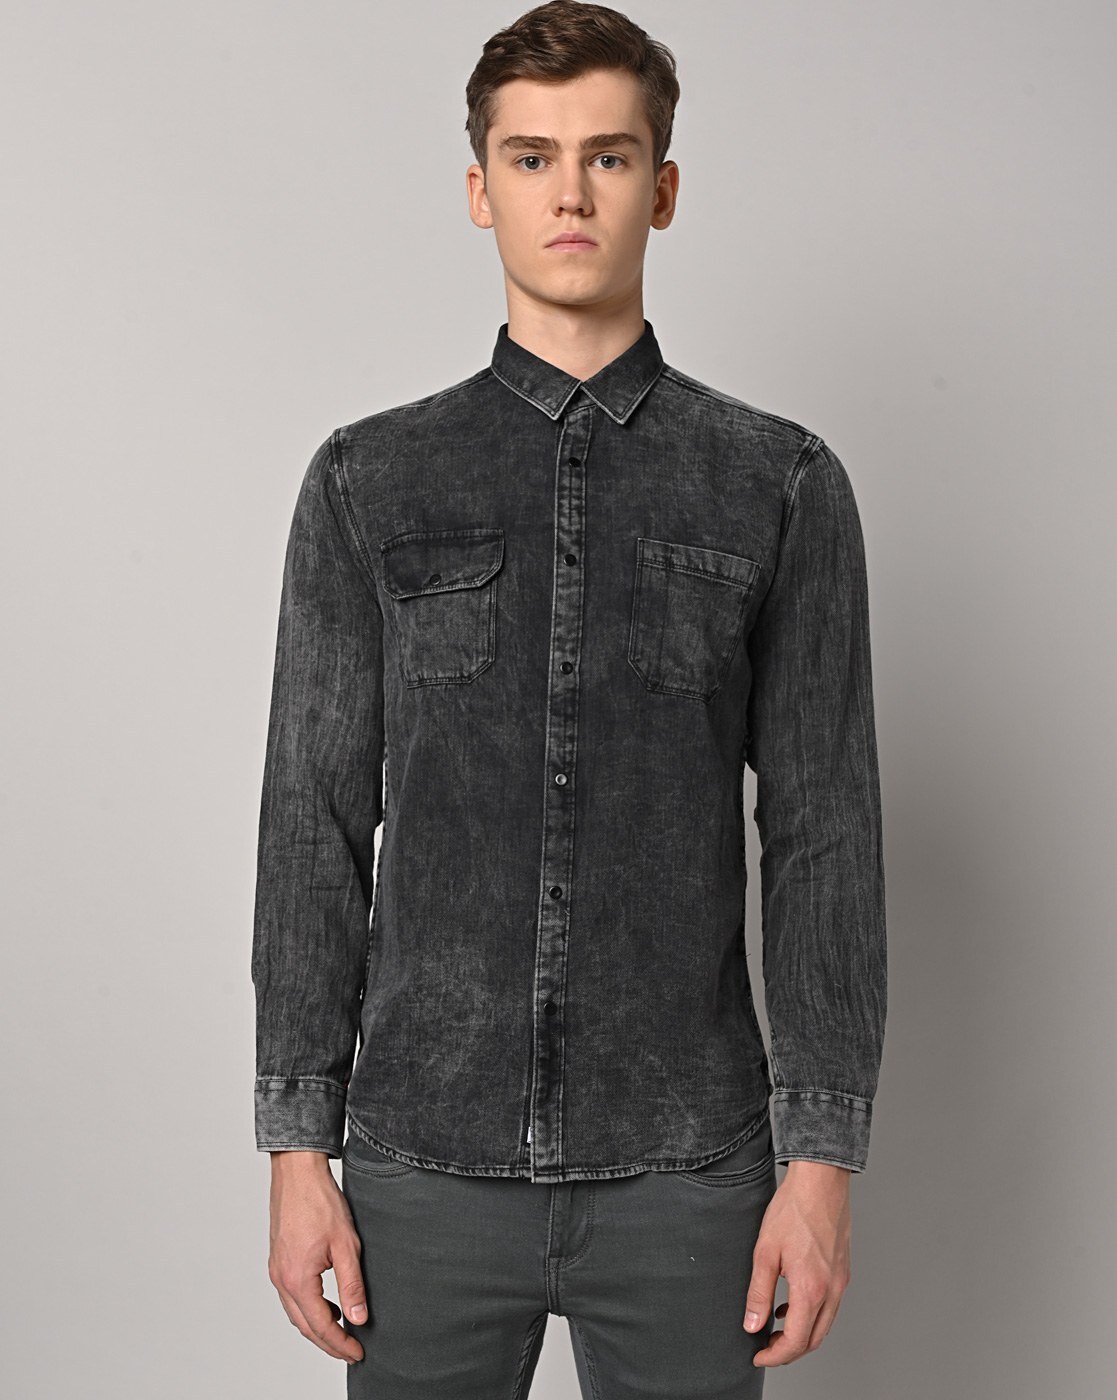 Buy Wrangler Men's Solid Black Denim Shirt (Regular) | Wrangler® India  Official Online Store